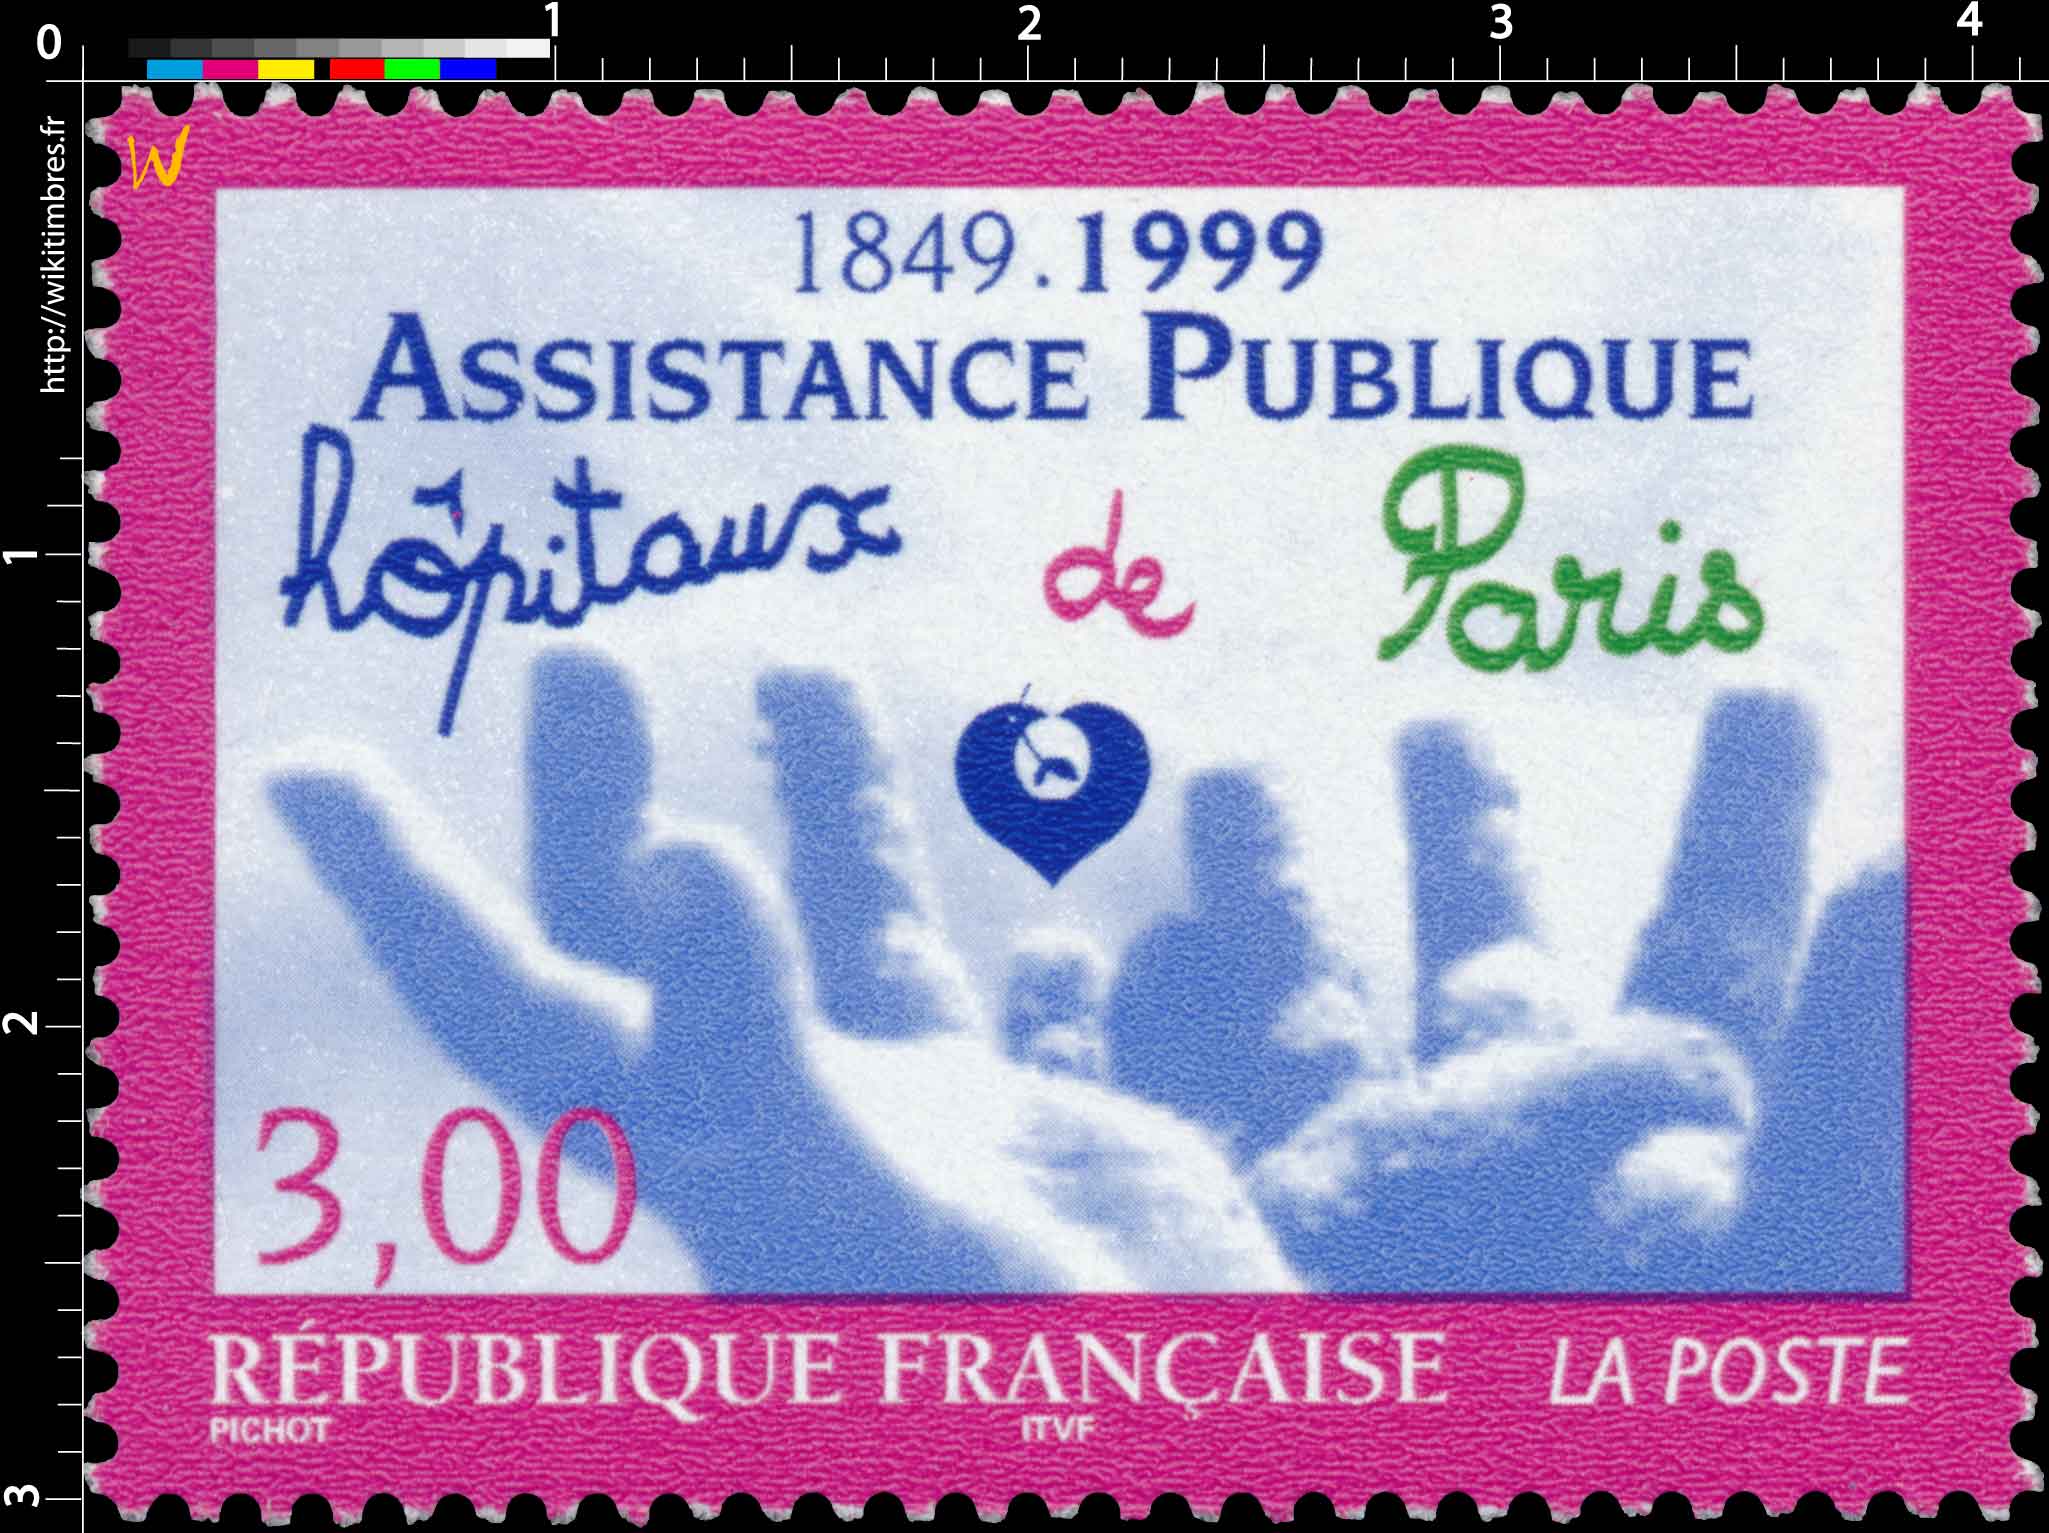 ASSISTANCE PUBLIQUE 1849-1999 Hôpitaux de Paris